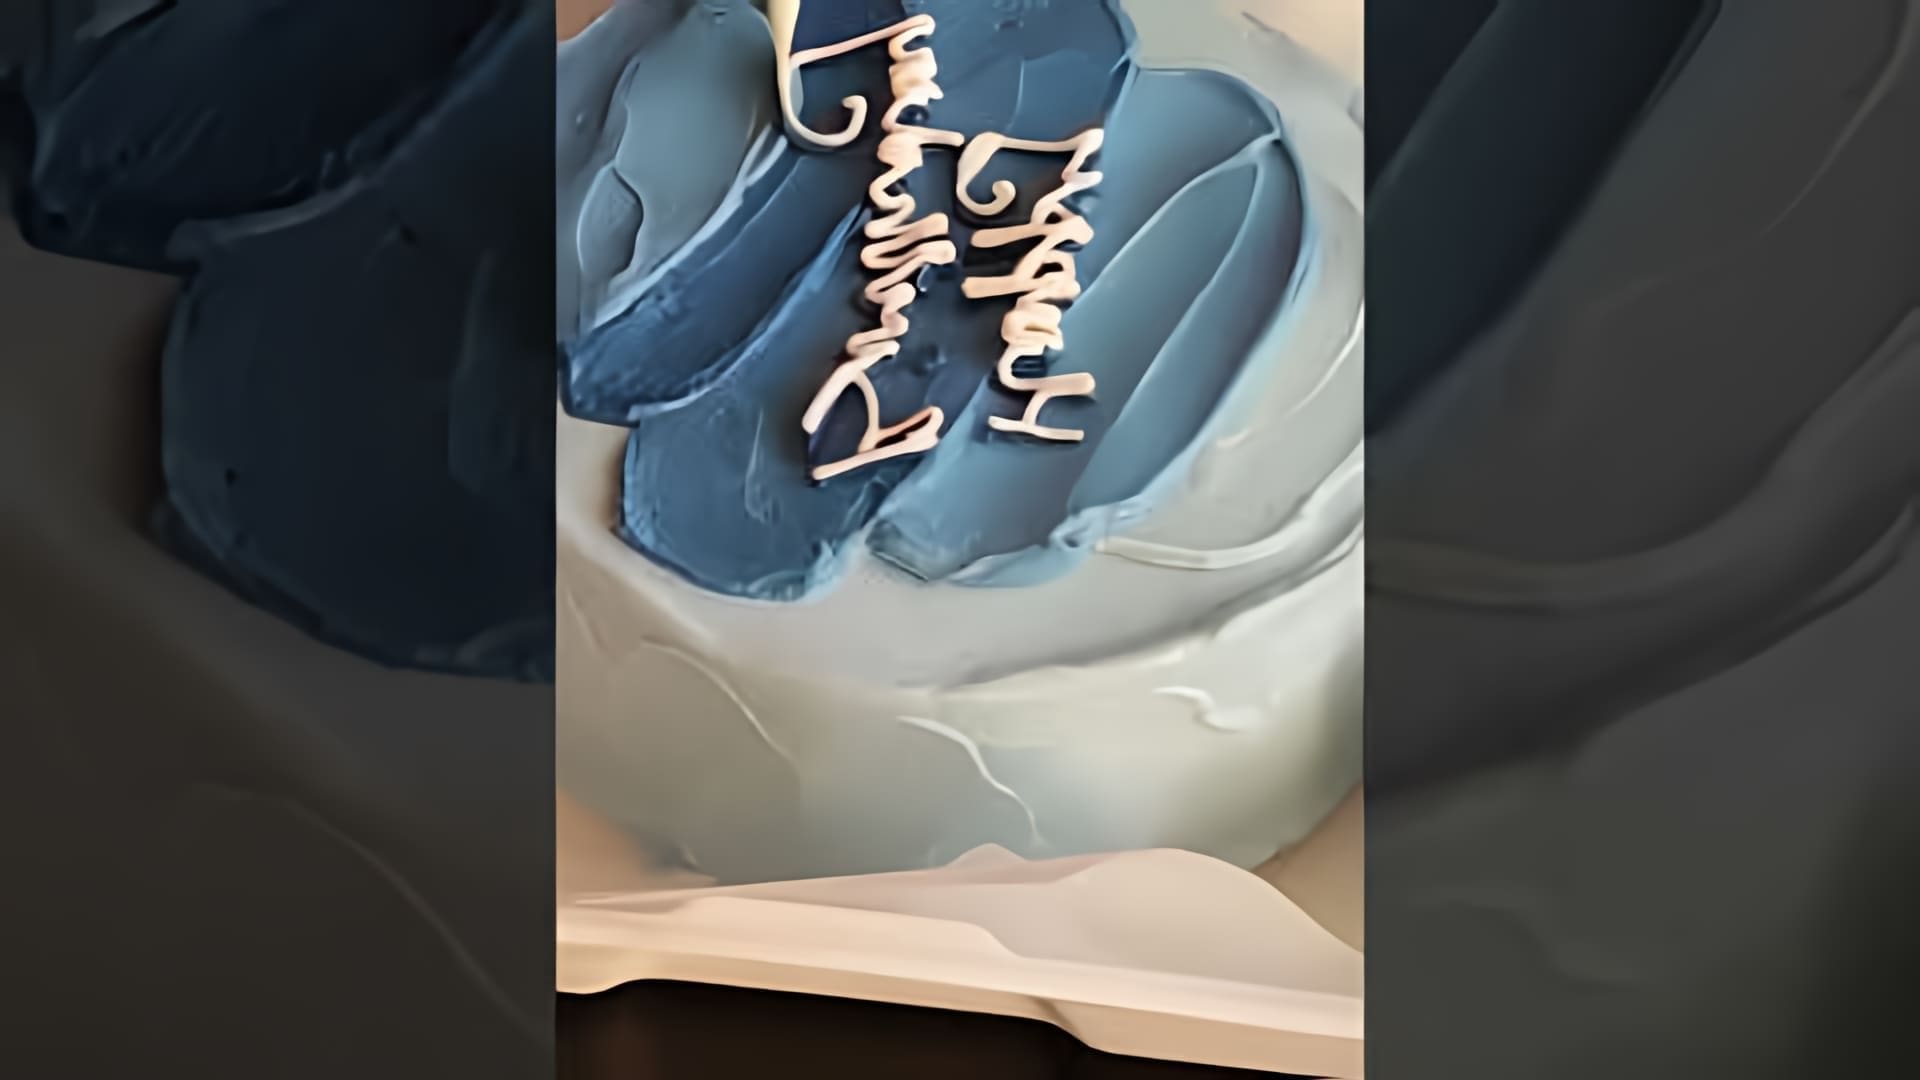 В этом видео демонстрируется процесс создания торта с простым дизайном в виде мазков голубых и синих цветов